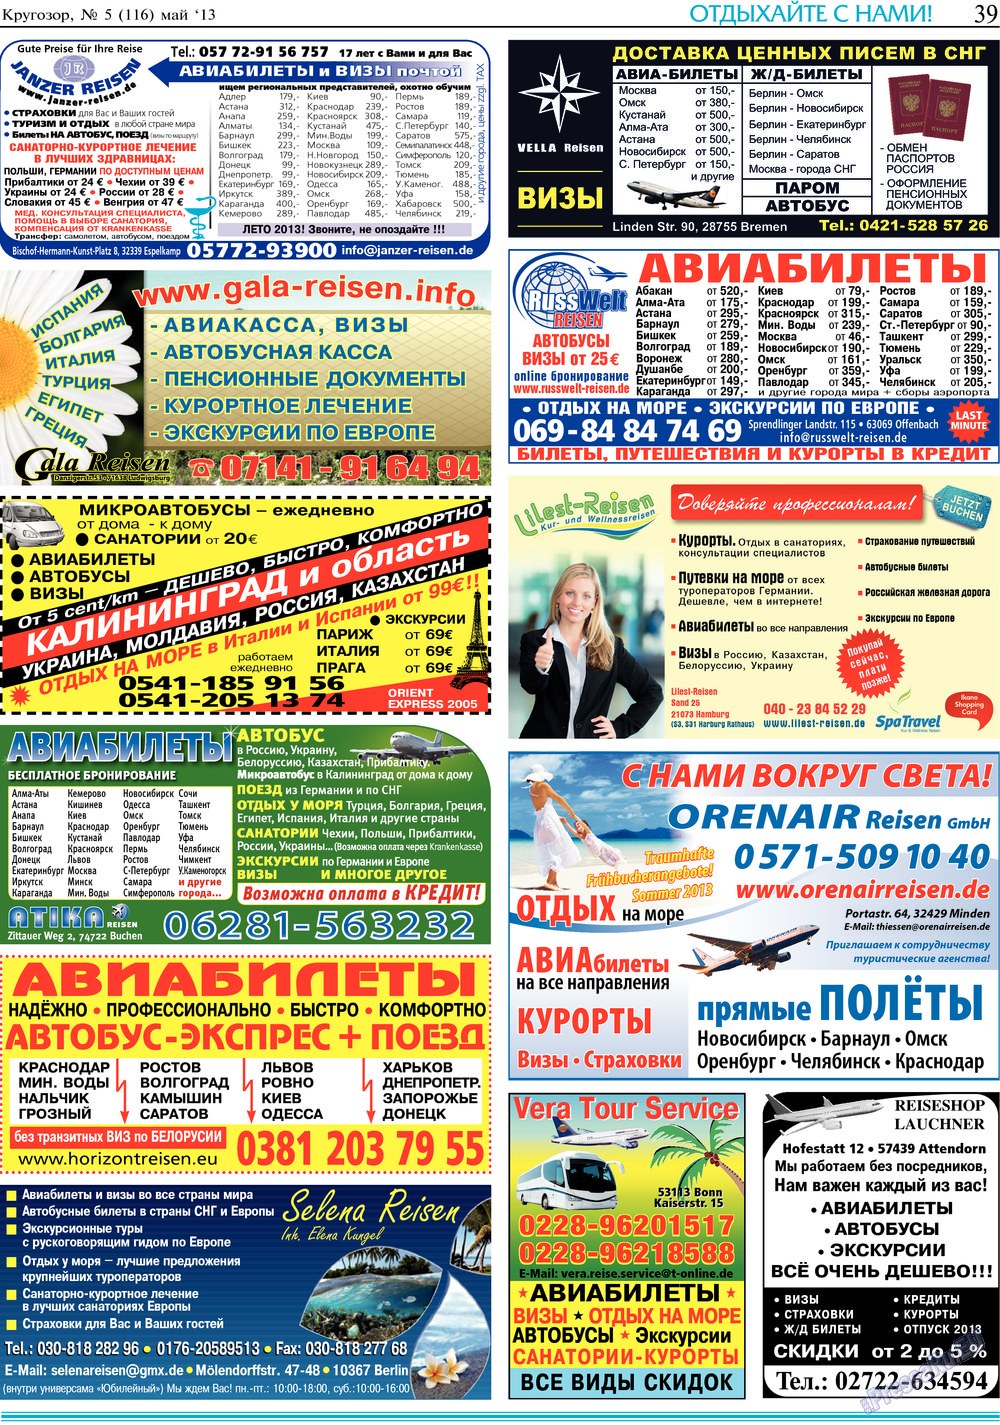 Кругозор, газета. 2013 №5 стр.39